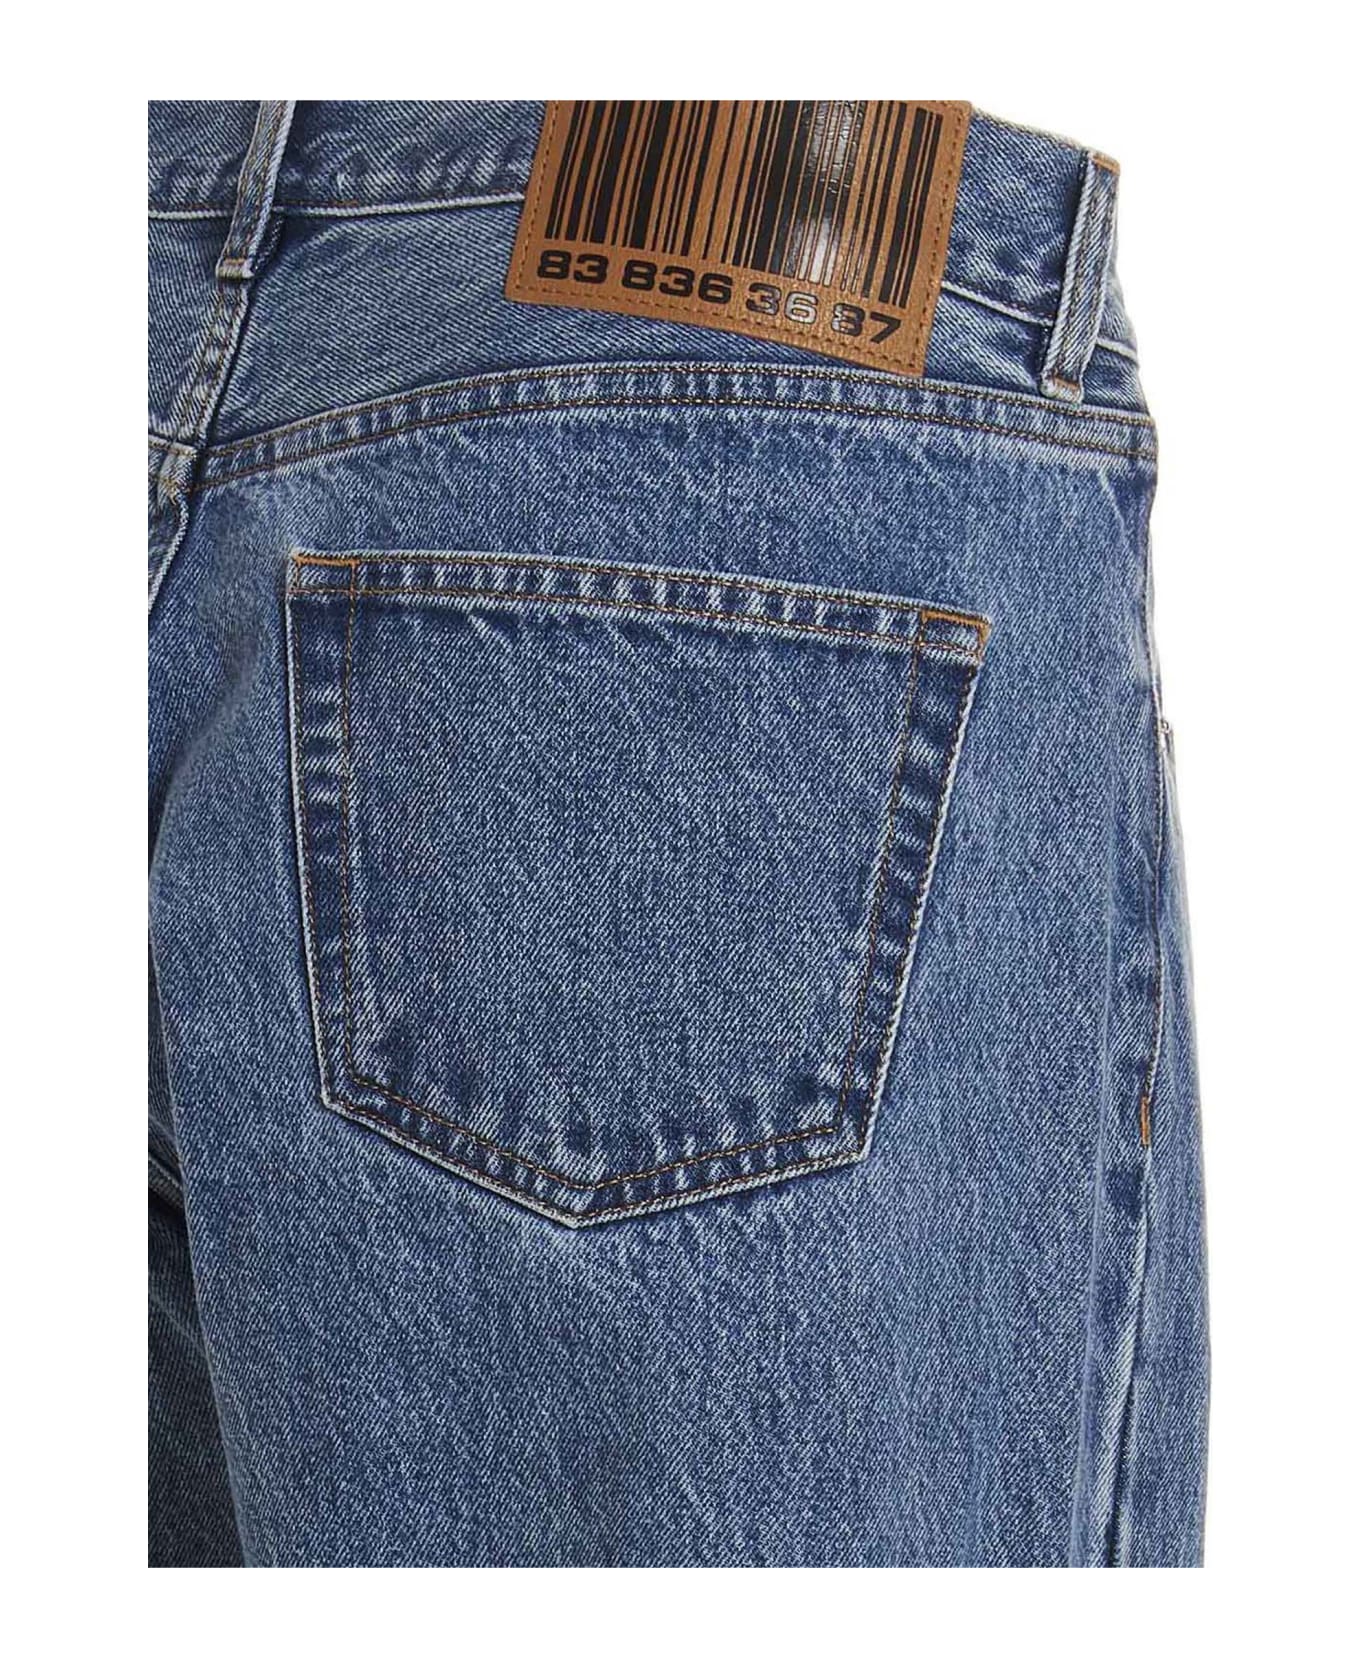 VTMNTS 5-pocket Jeans - DENIM BLUE デニム